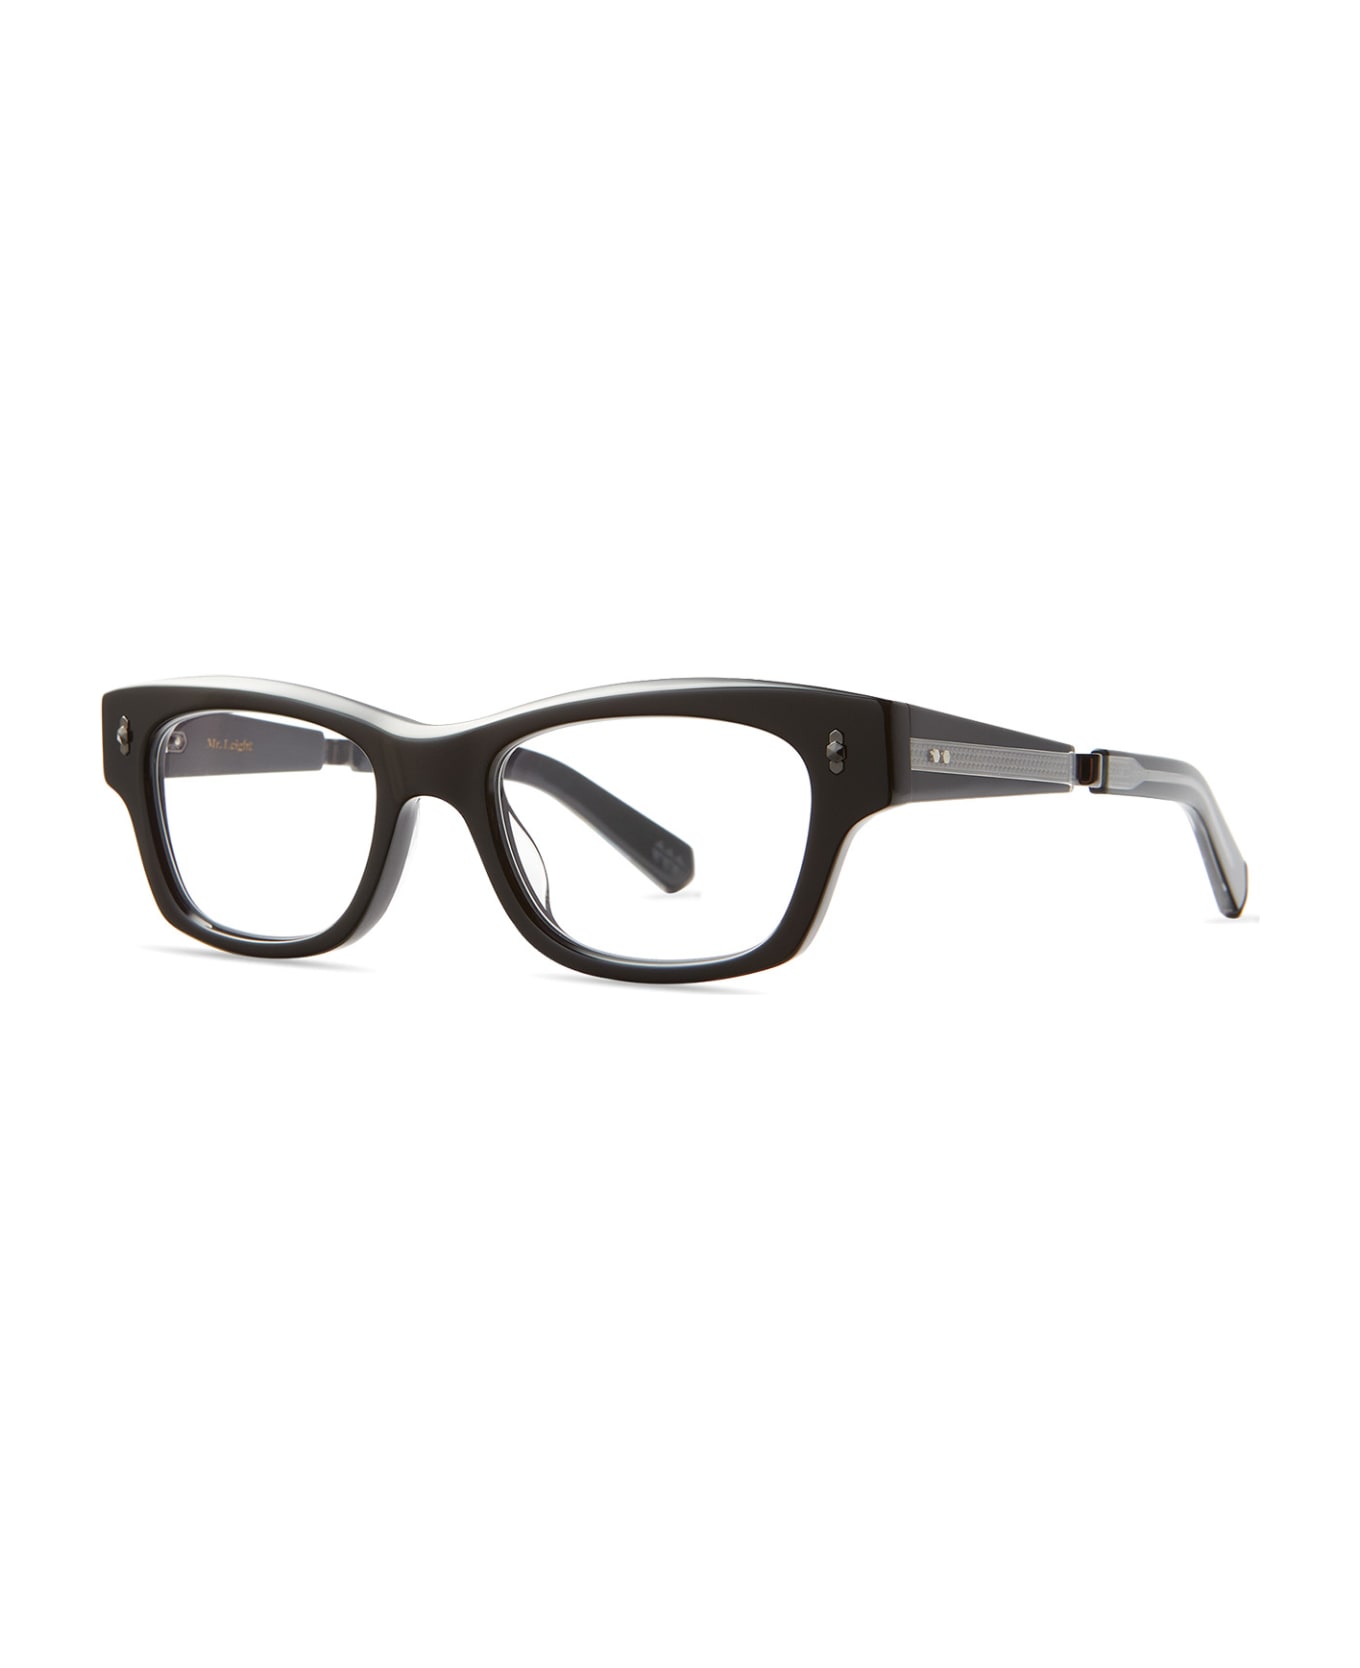 Mr. Leight Antoine C Black-gunmetal Glasses - Black-Gunmetal